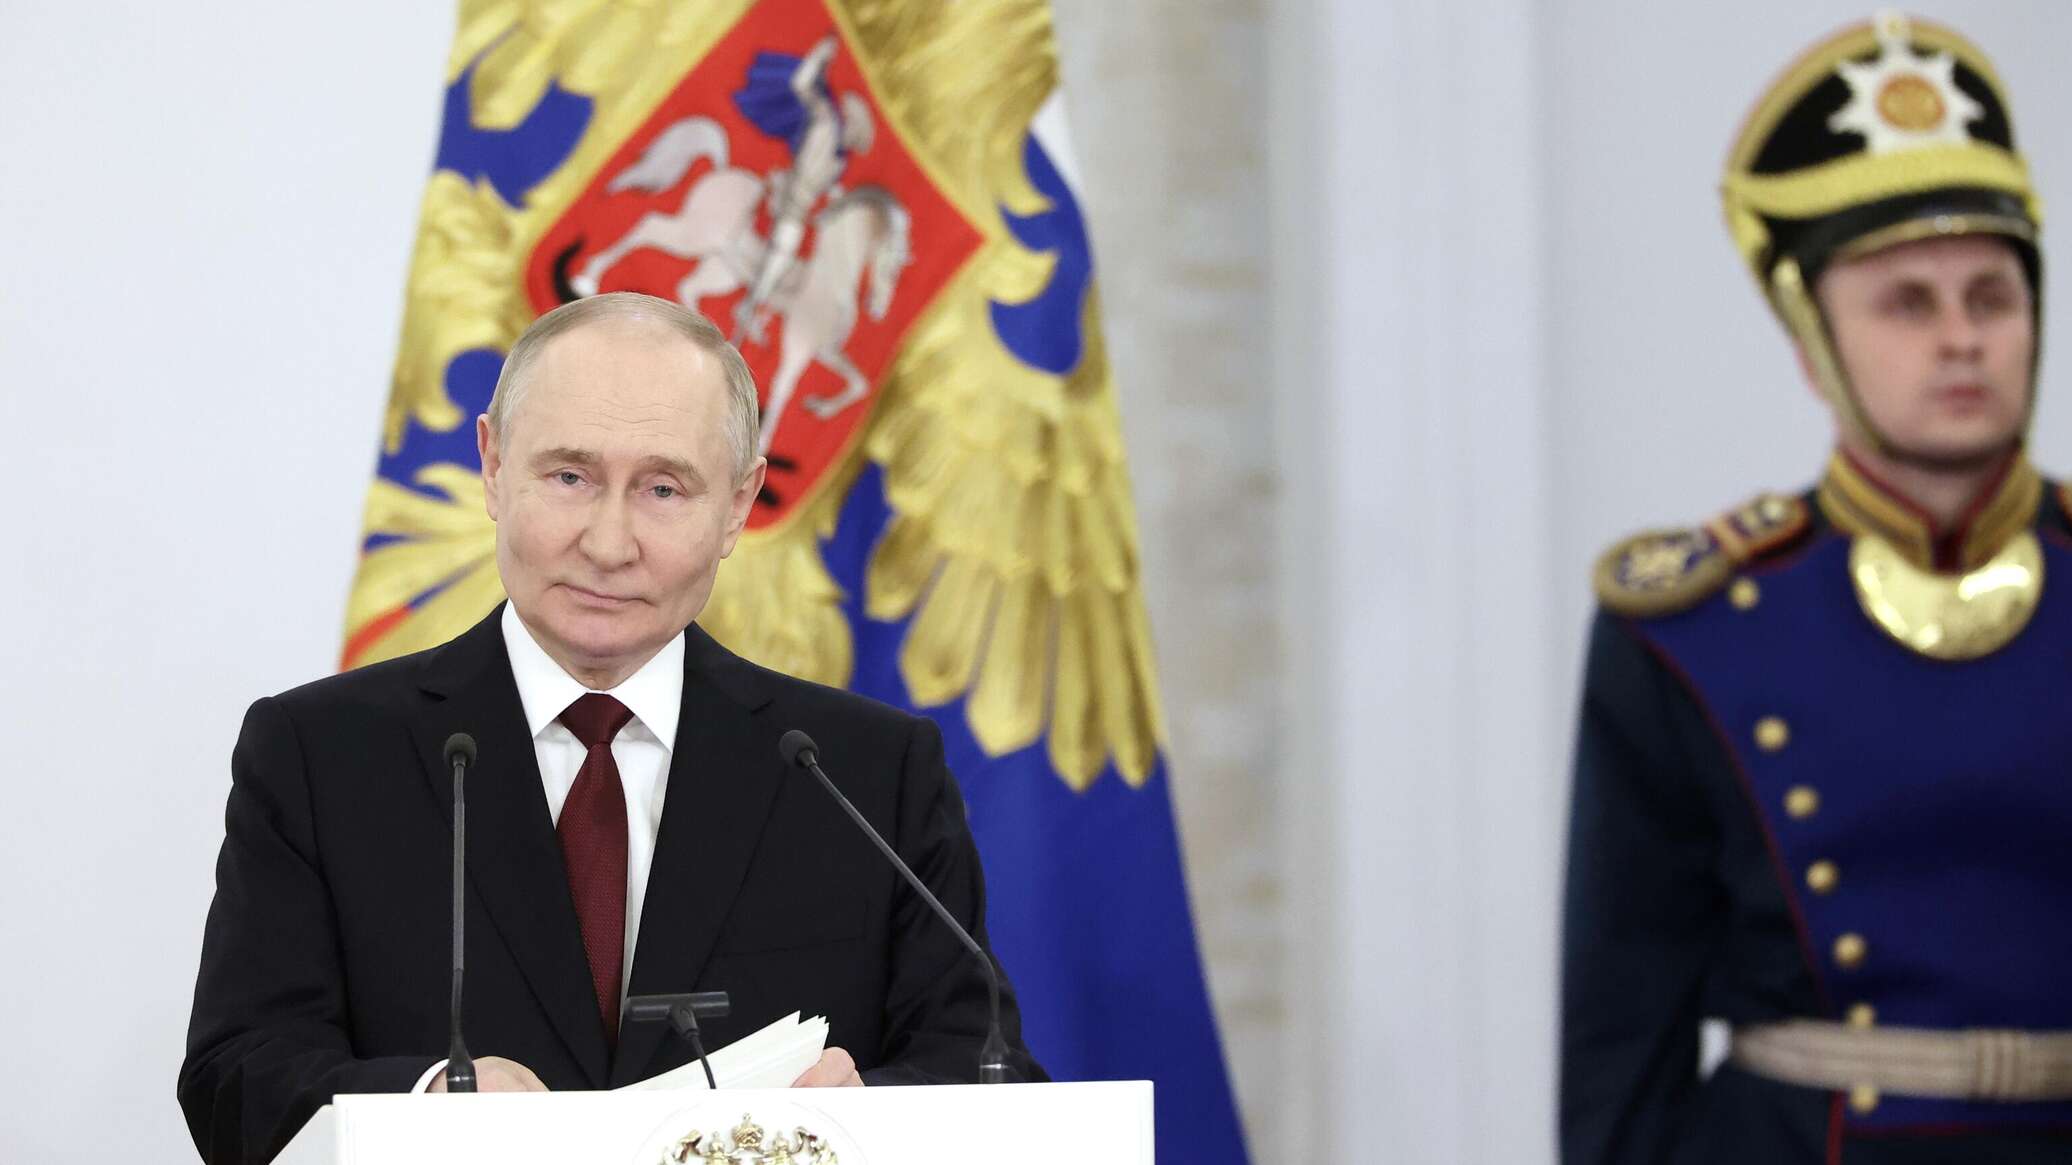 بوتين: الحديث عن رغبة روسيا بمهاجمة أوروبا هراء